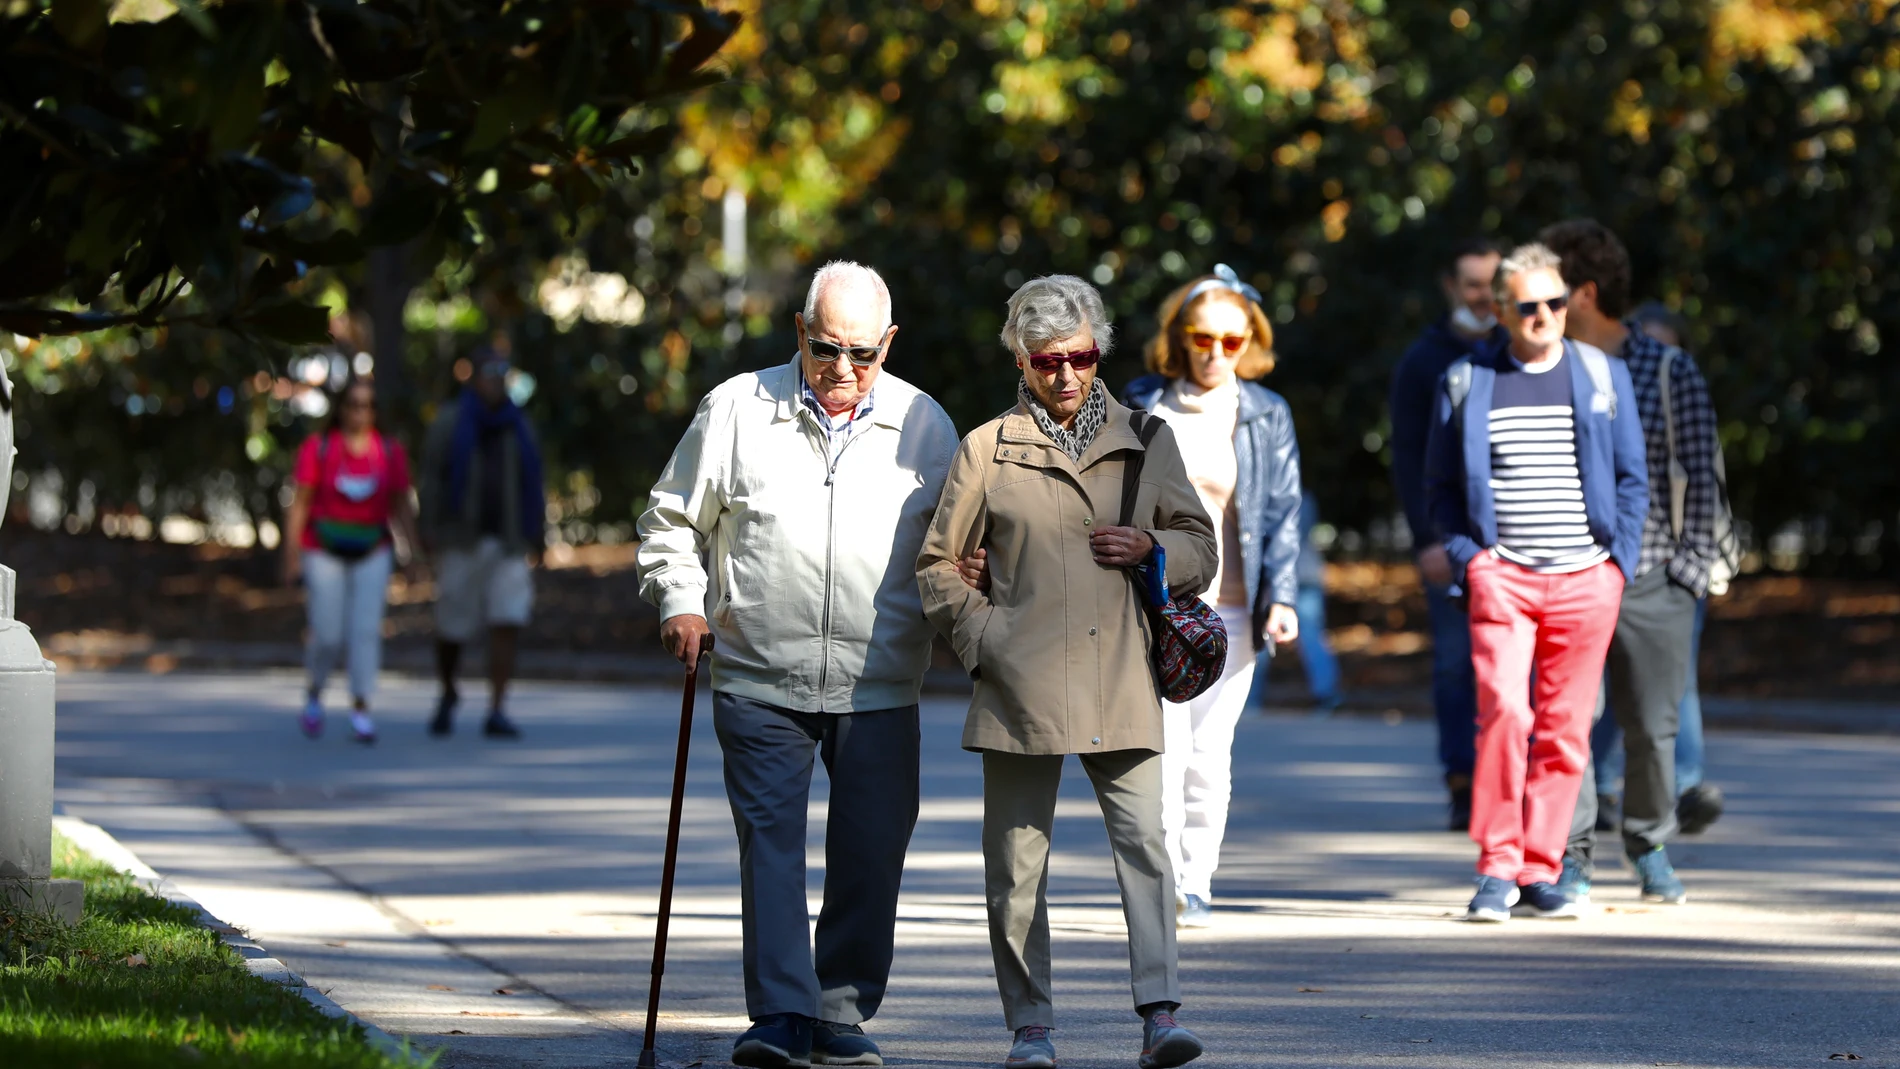 Pensionistas paseando y haciendo deporte por el parque del Retiro (Madrid)